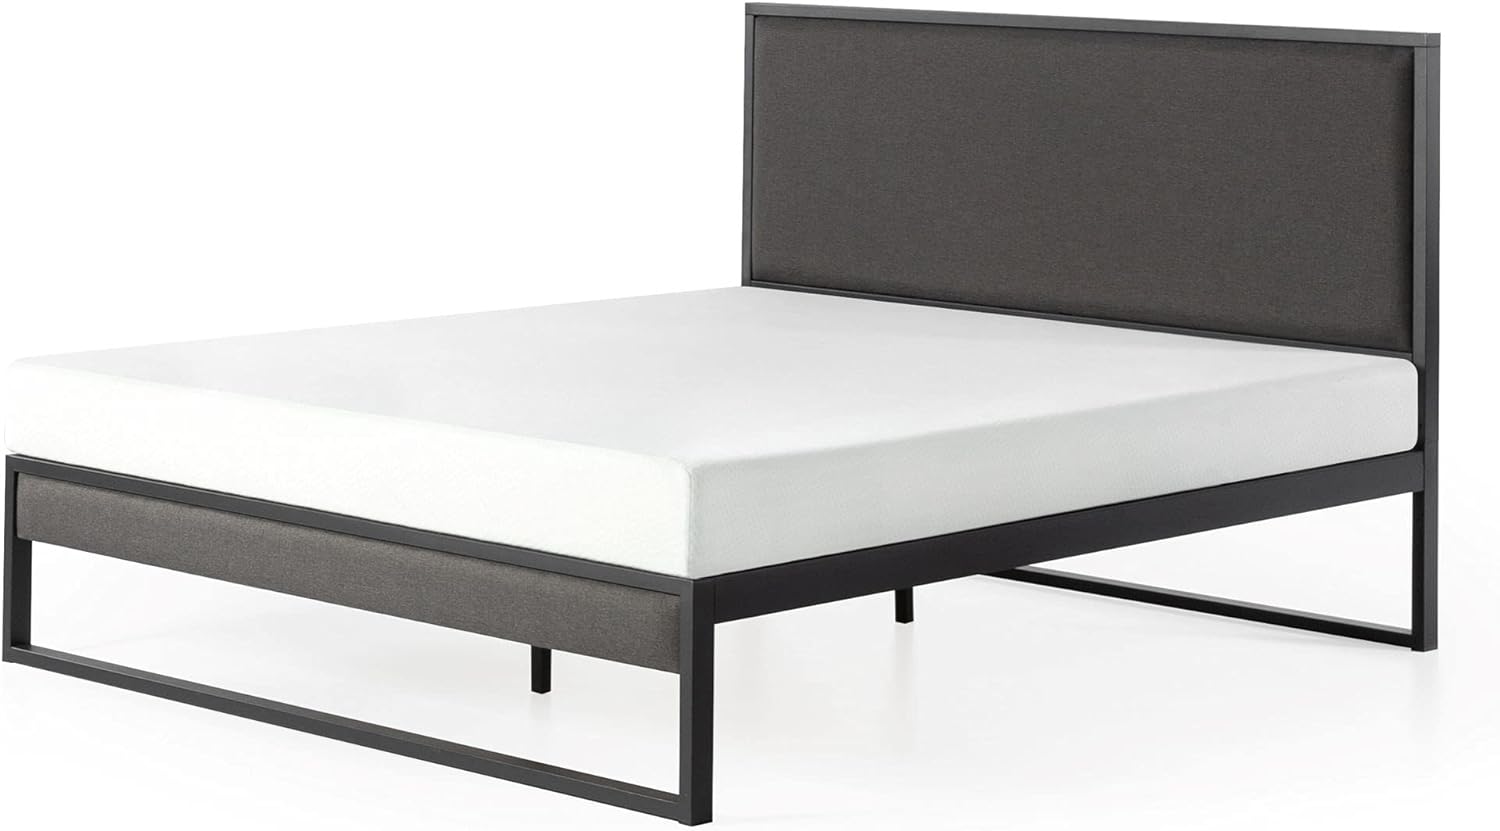 ZINUS Christina Upholstered Platform Bed Frame with Headboard, King - $139